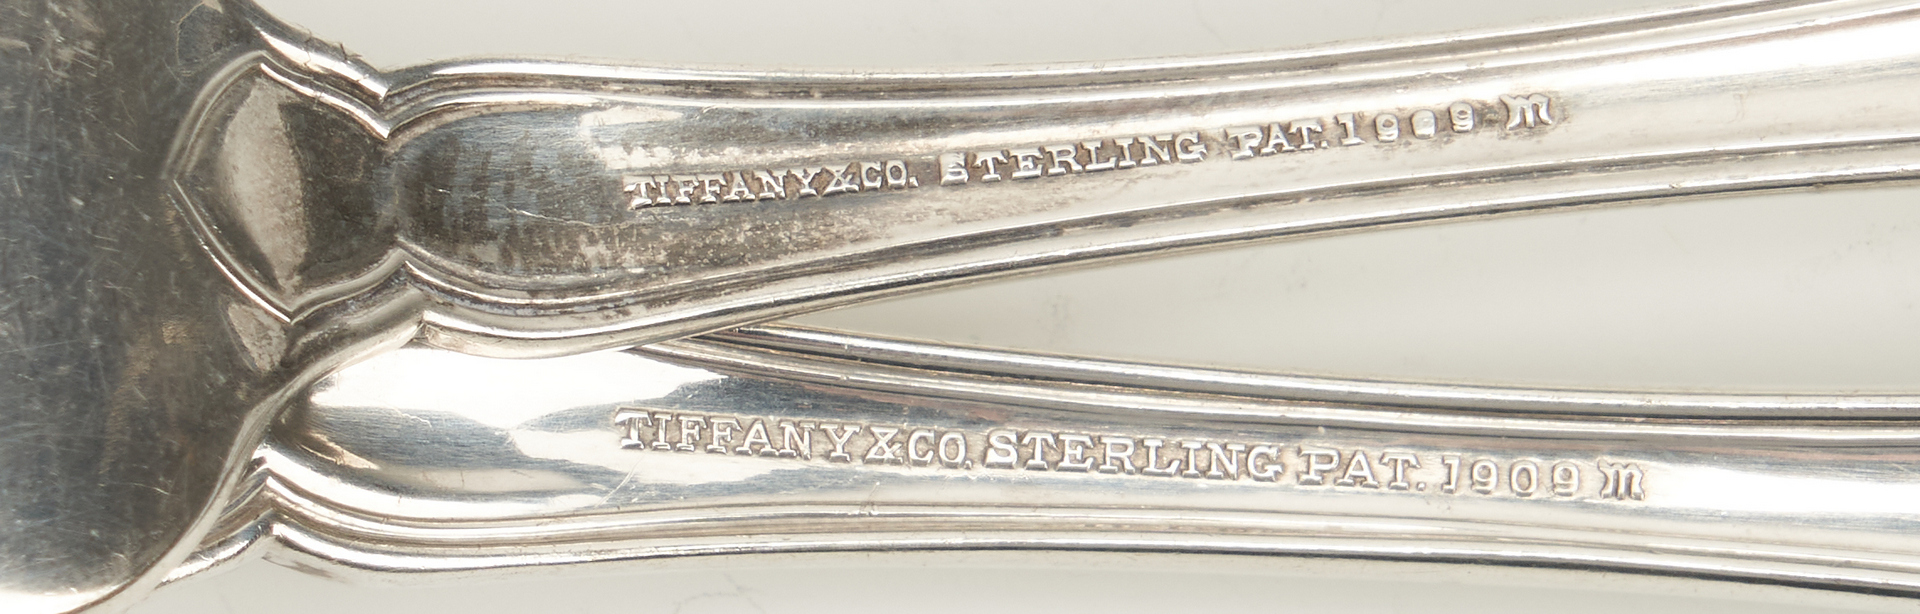 Lot 61: 91 Pcs. Tiffany Sterling Silver Flatware, Winthrop Pattern